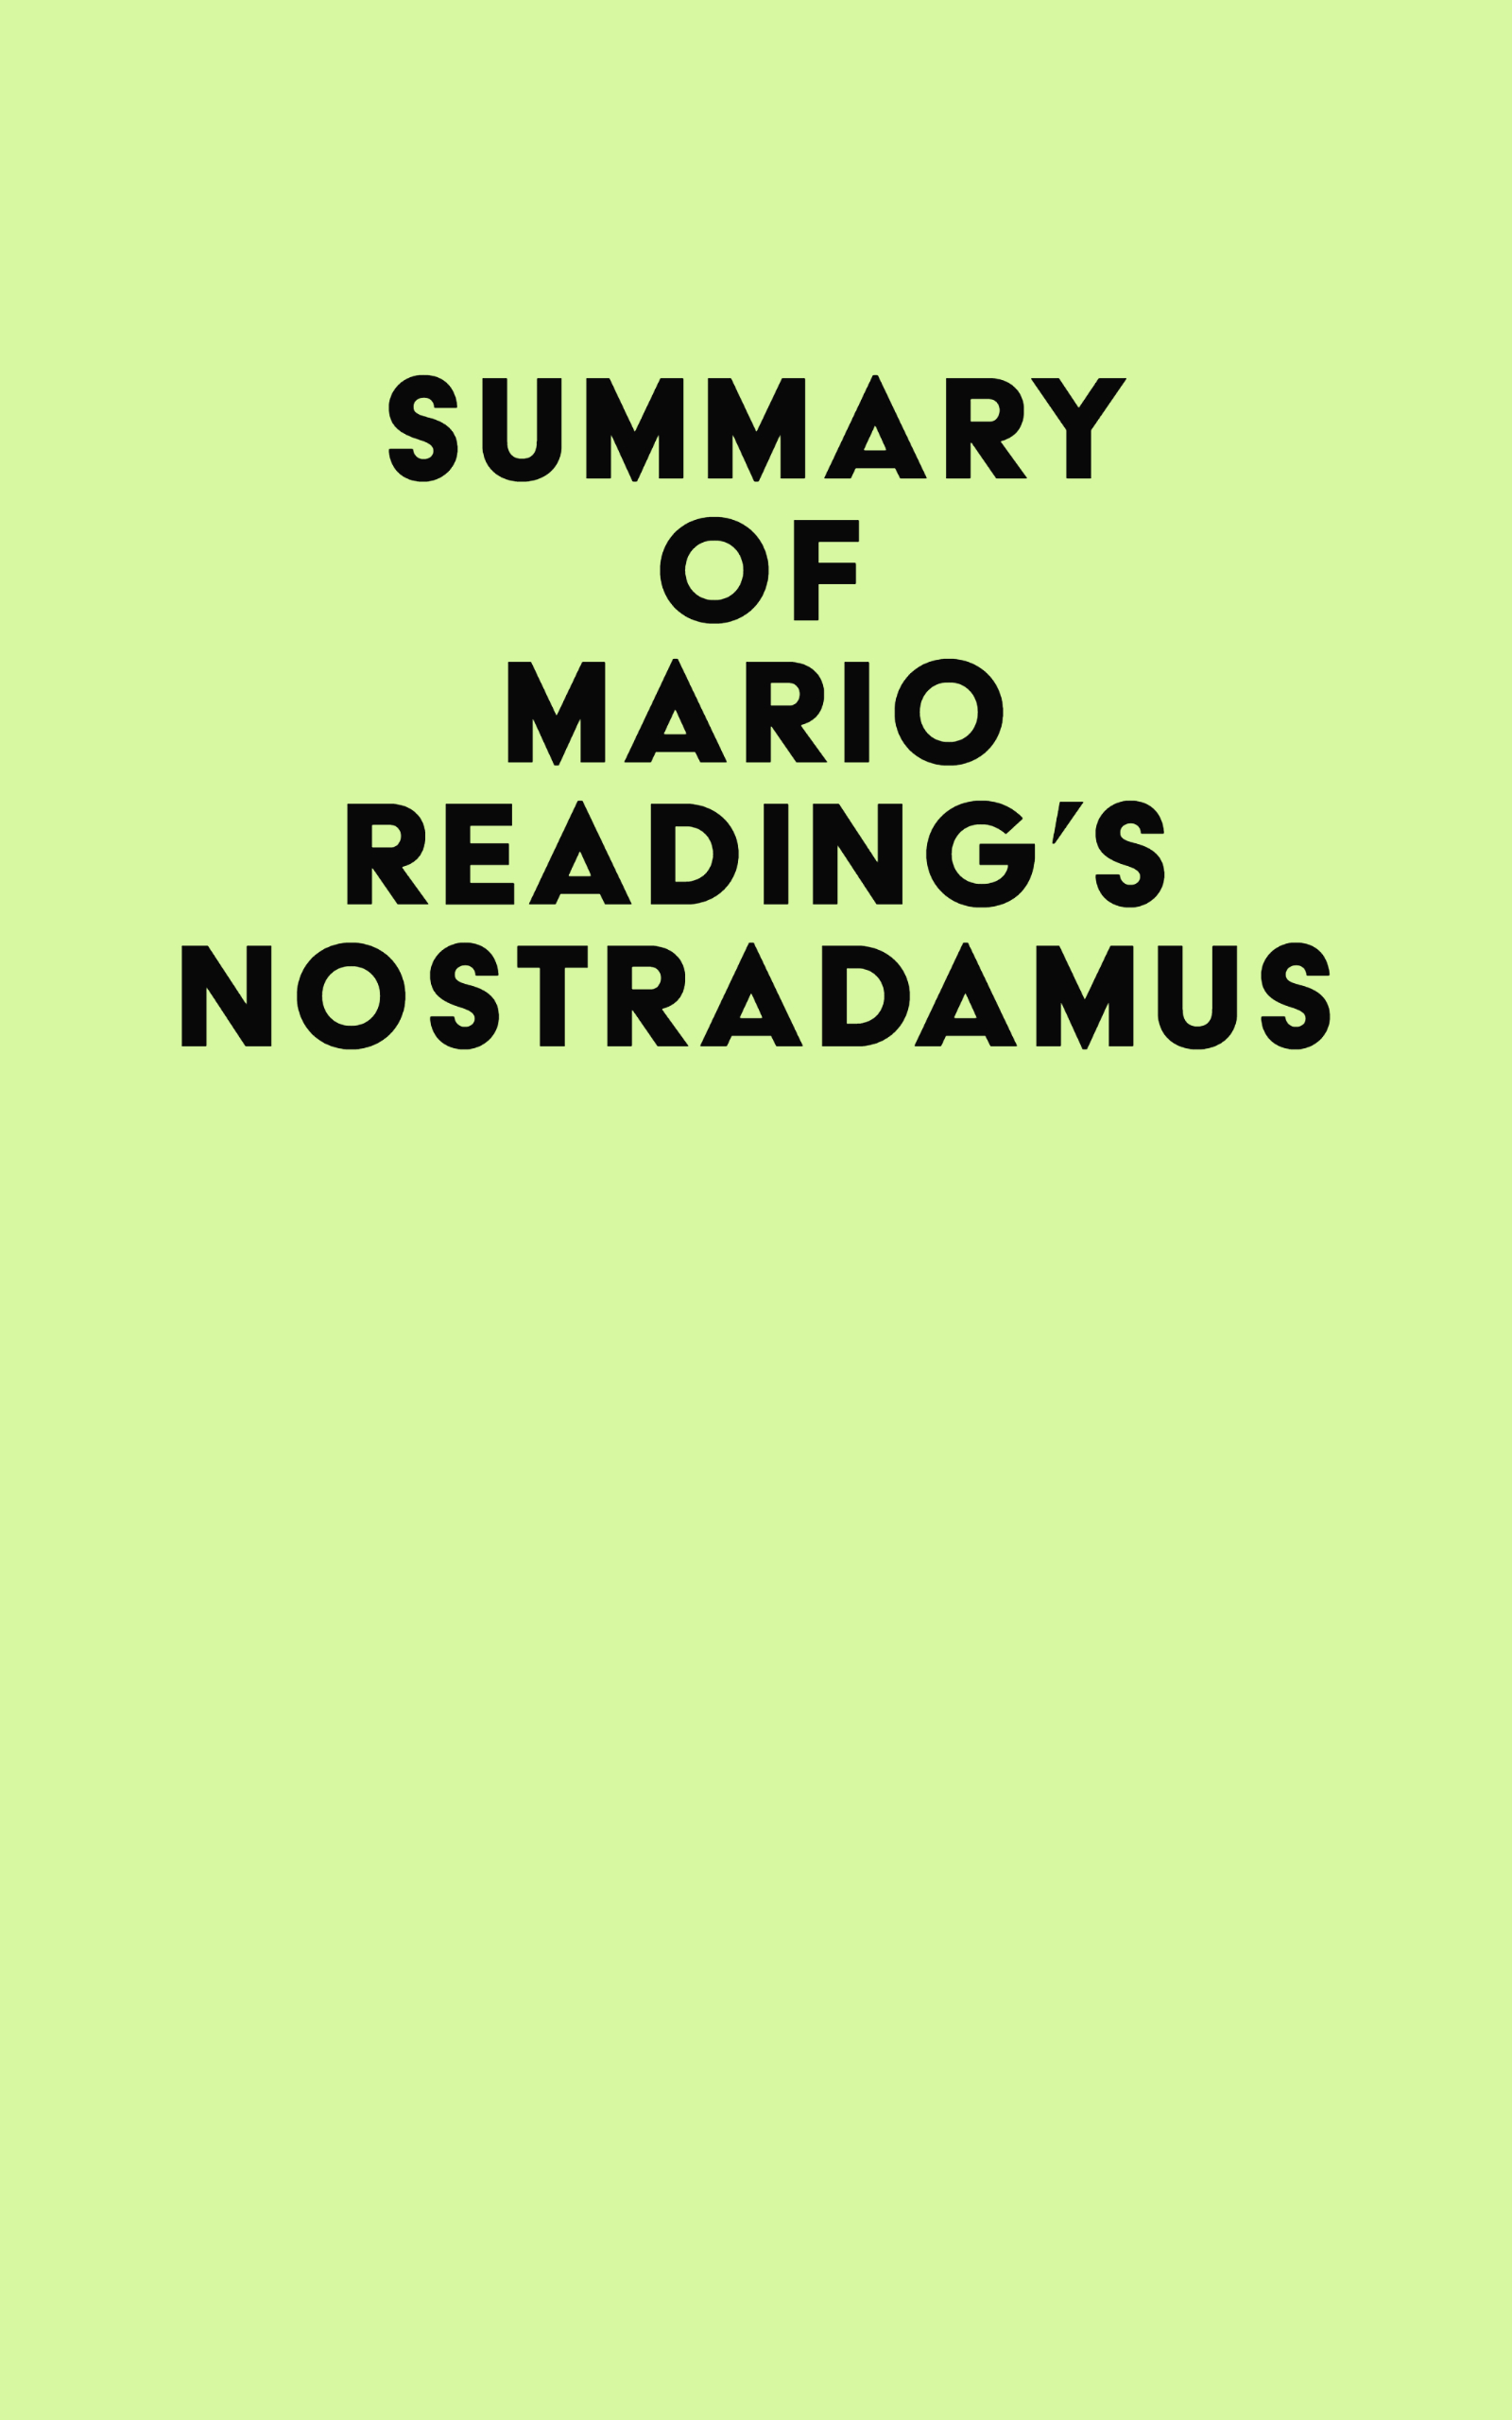 Summary of Mario Reading's Nostradamus